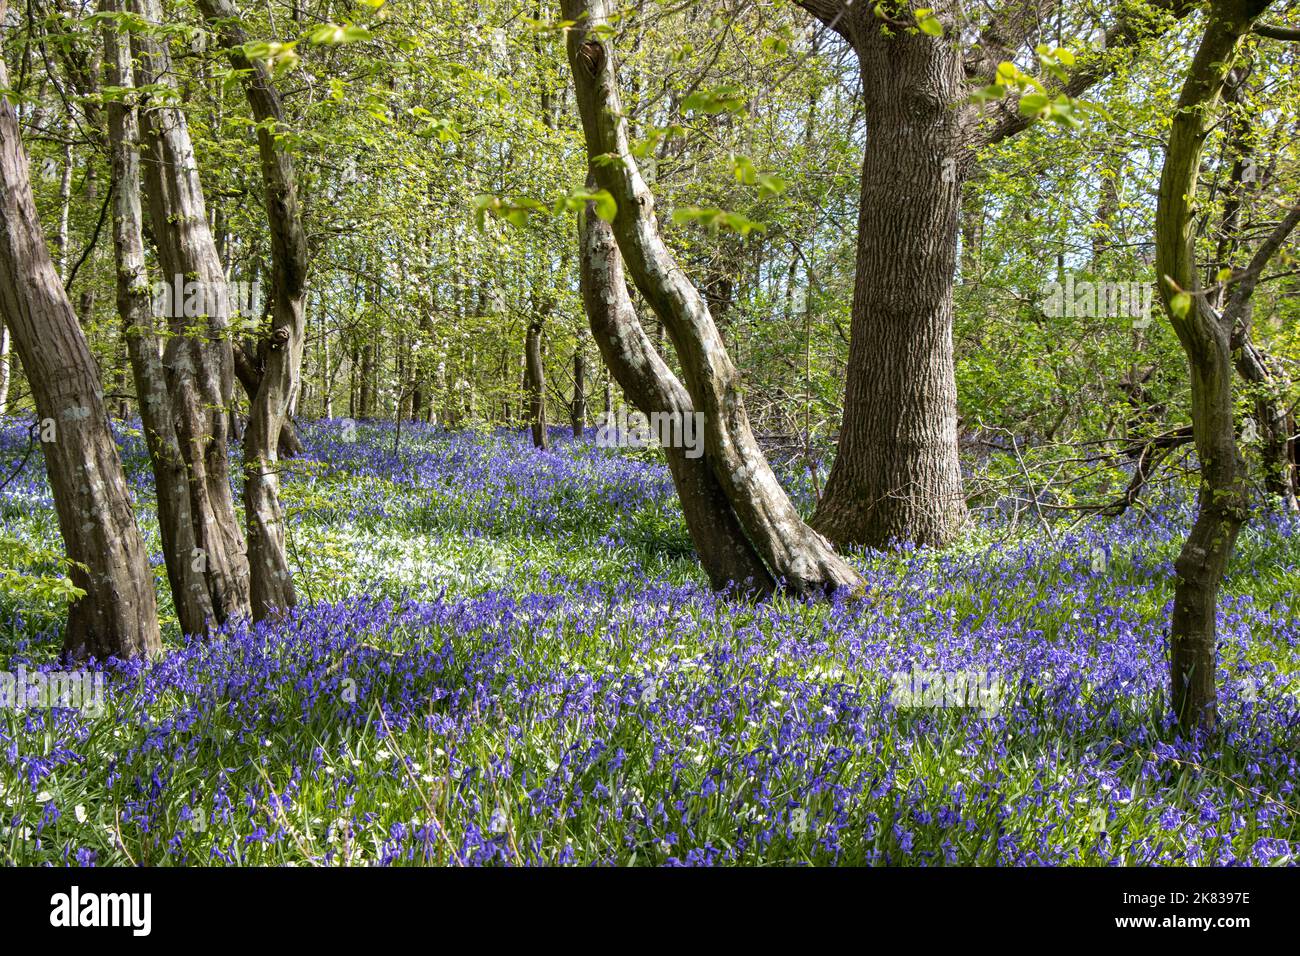 Tapis Bluebell dans une forêt à Arlington, dans le sud de l'Angleterre. Promenade Bluebell. Banque D'Images